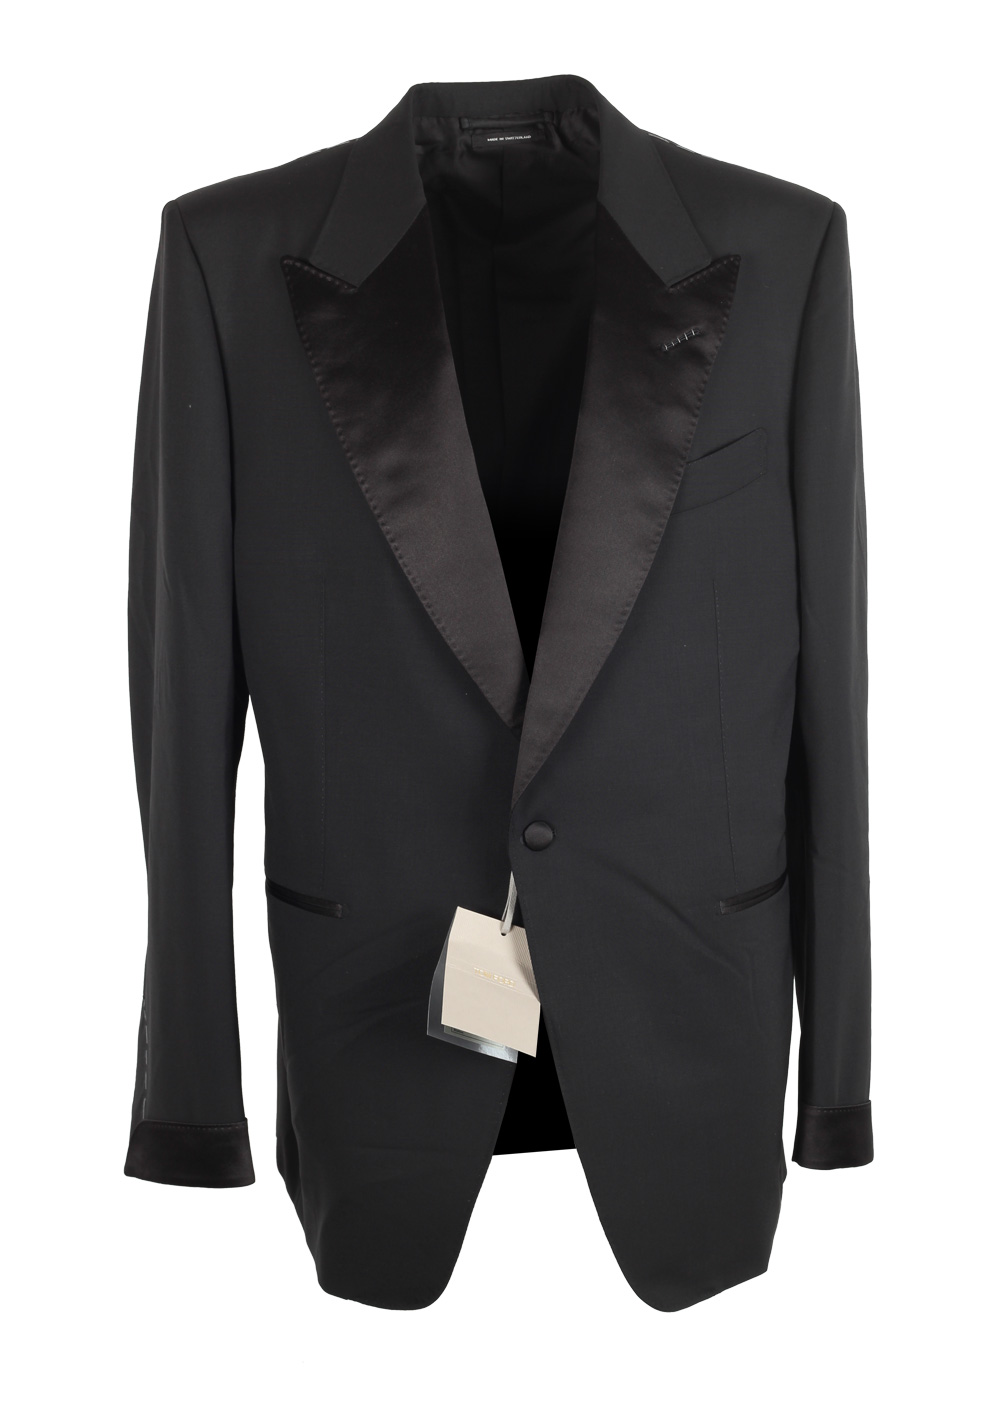 TOM FORD Shelton Black Tuxedo Suit Size 54 / 44R U.S. | Costume Limité